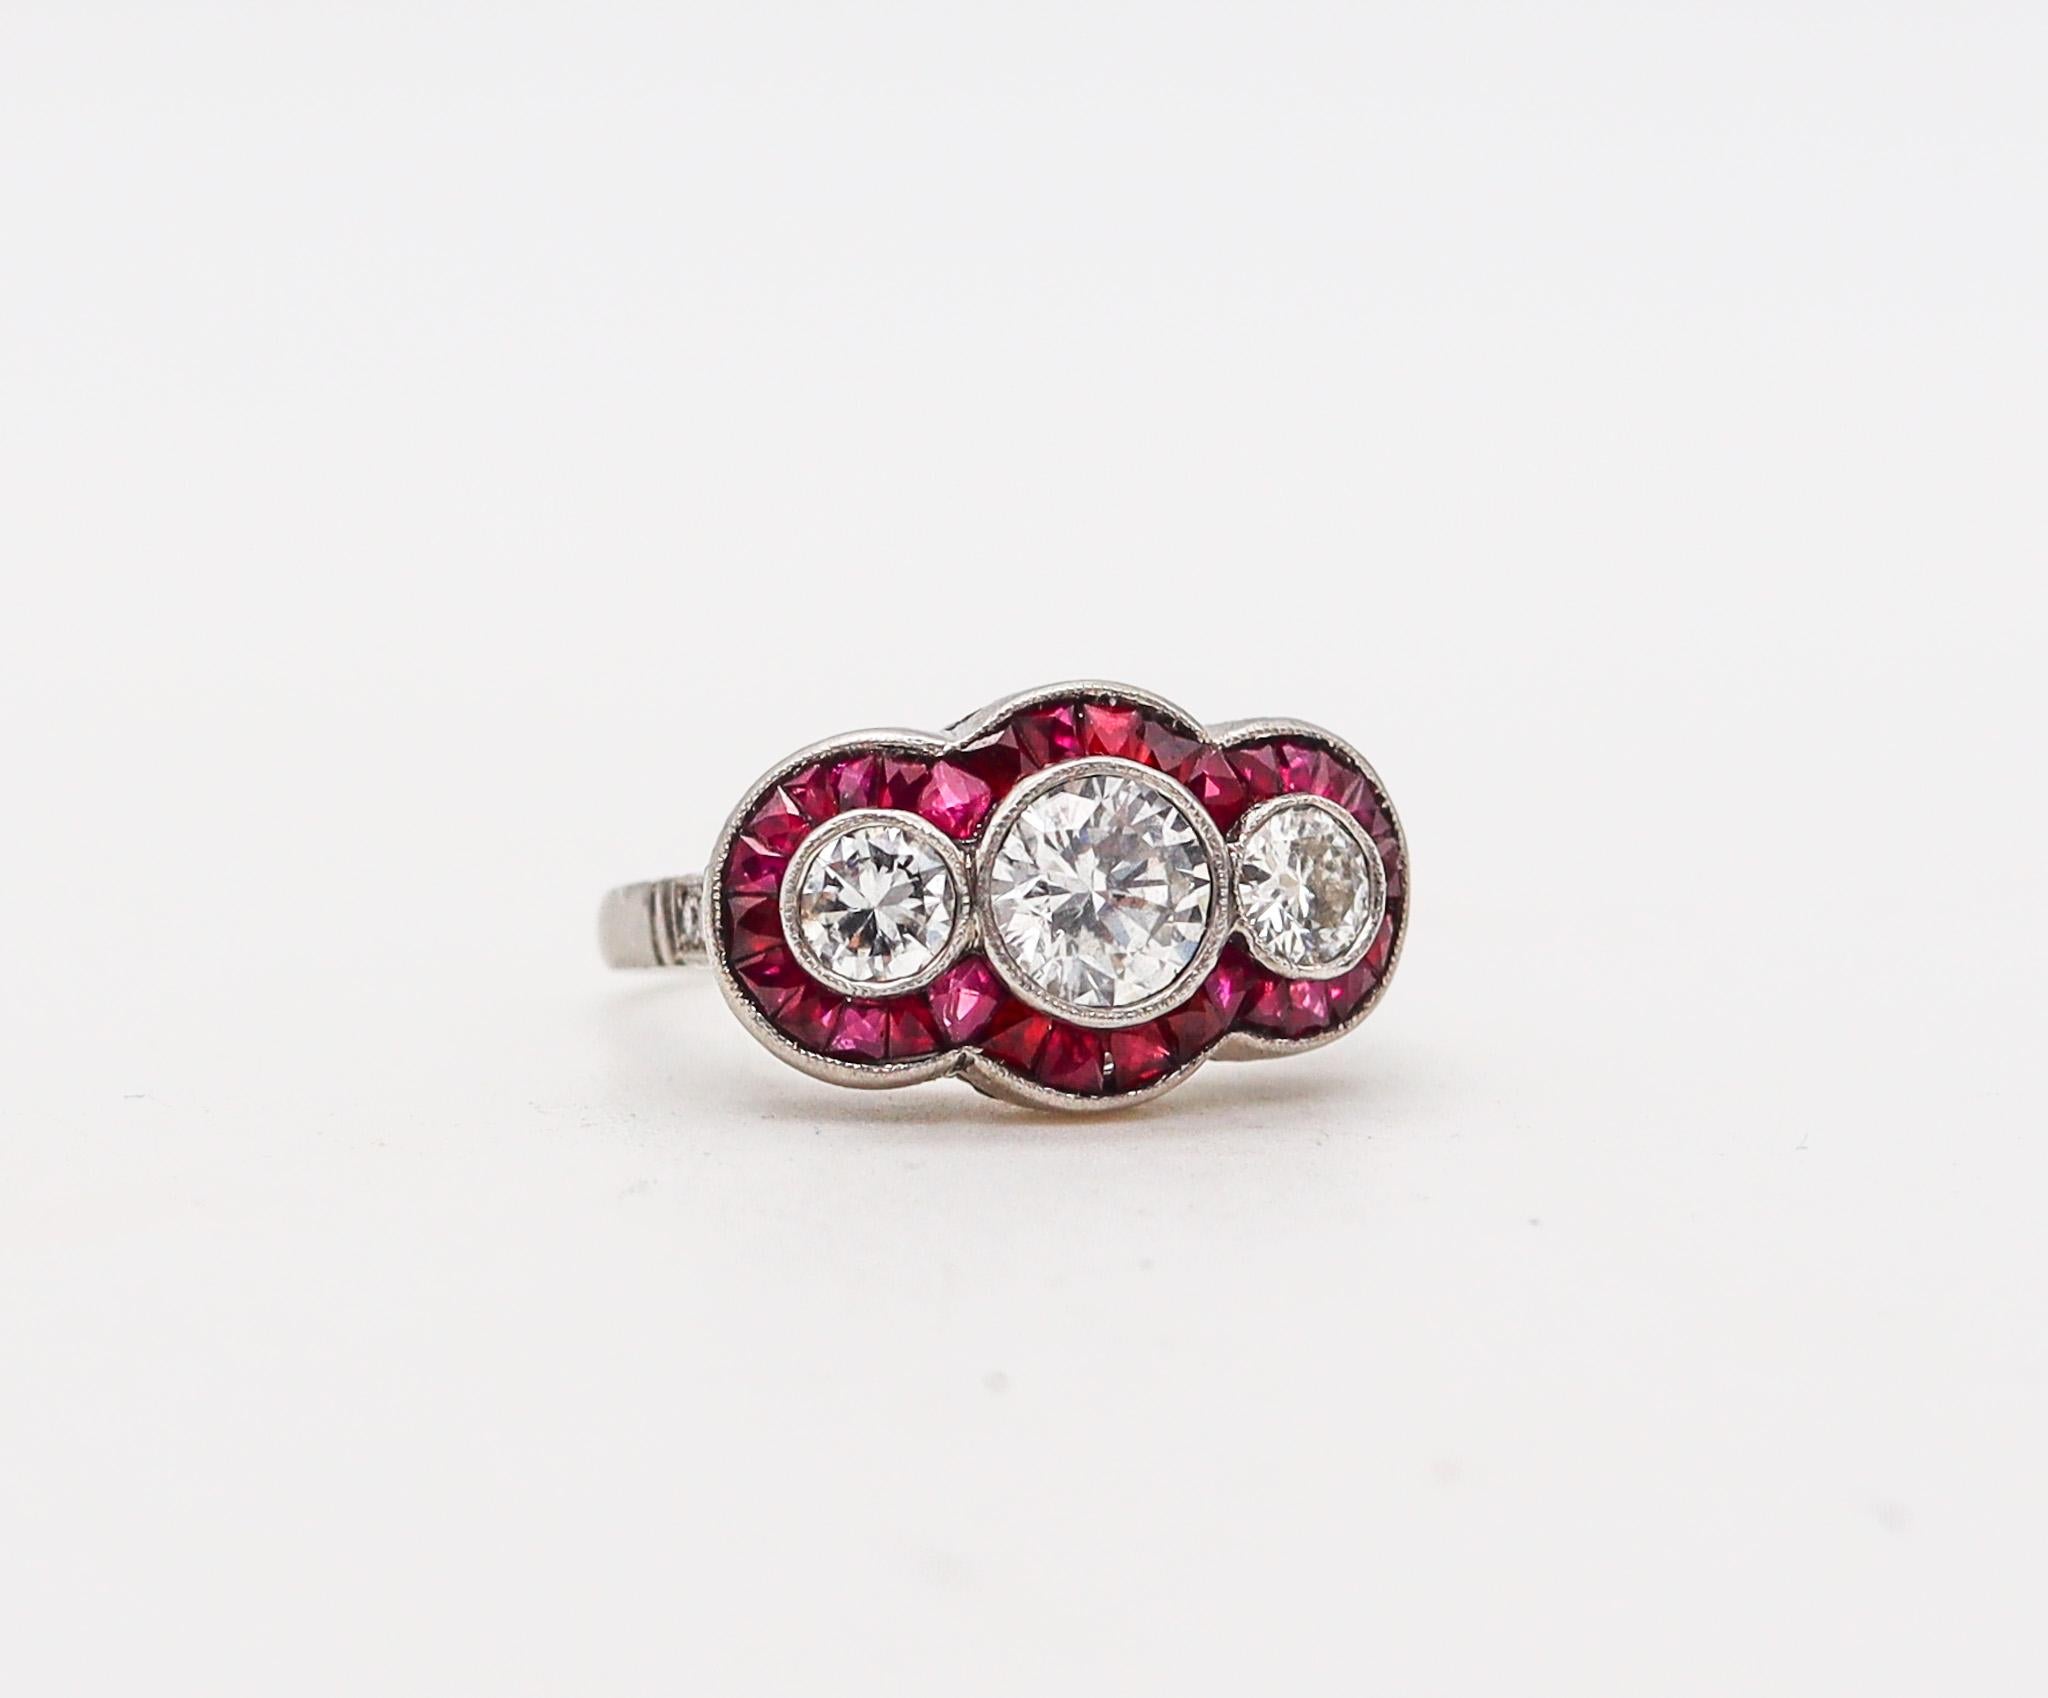 Ein Art-Deco-Ring mit drei Steinen und Rubinen.

Schöner Ring mit drei Diamanten, der in Amerika während der Art-Déco-Periode im Jahr 1925 geschaffen wurde. Dieser schöne Ring schreit eindeutig nach Art déco und wurde aus massivem Platin mit